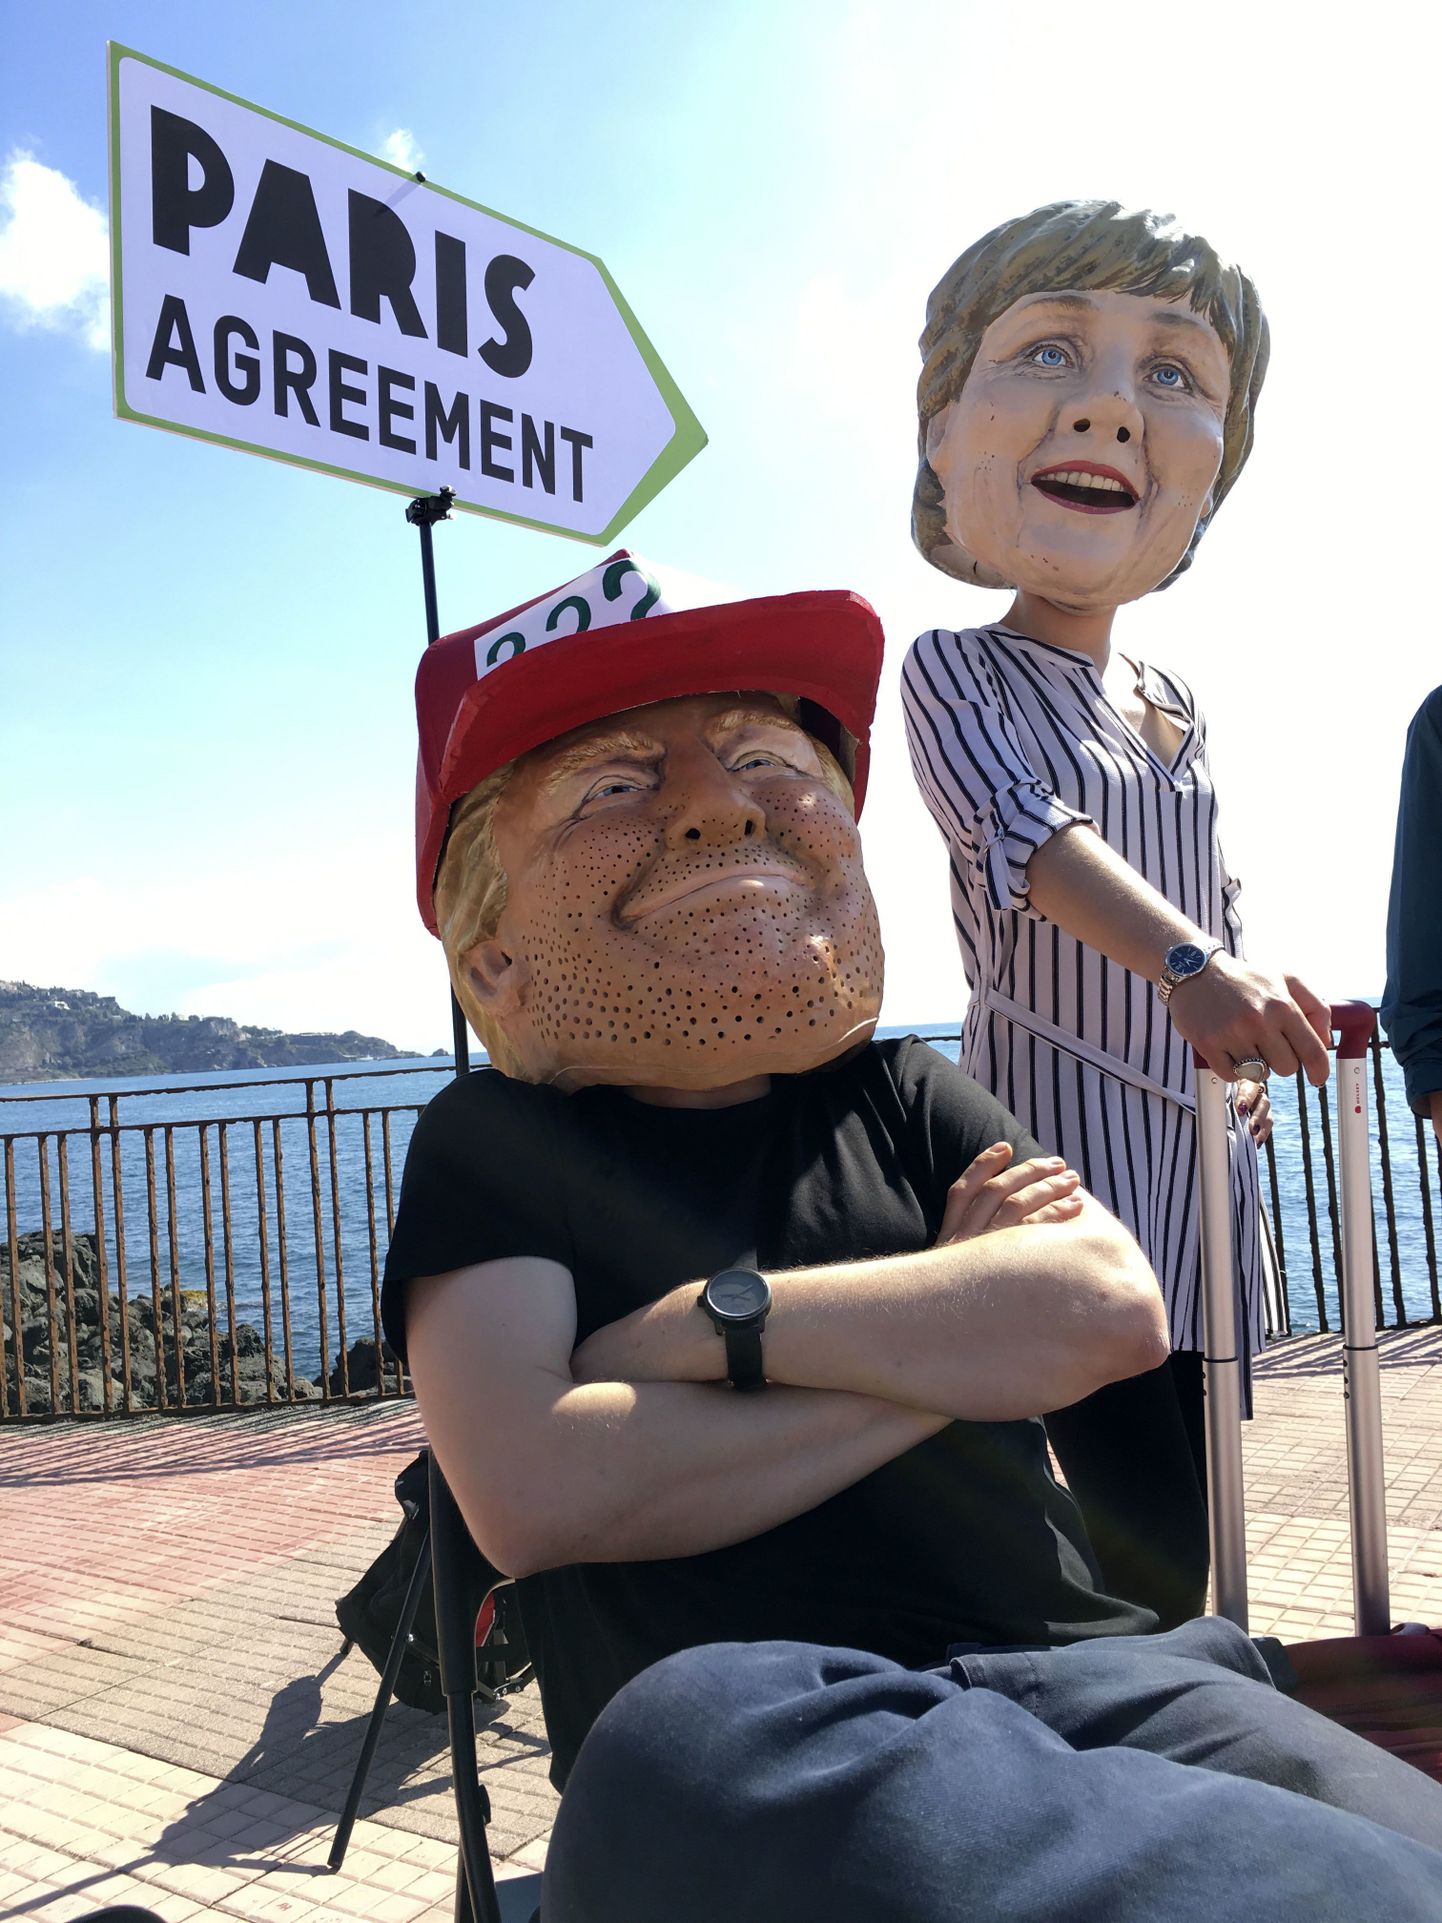 Donald Trumpiks ja Angela Merkeliks maskeerunud kliimaaktivistid demonstreerimas asjade hetkeseisu Pariisi leppe küsimuses.